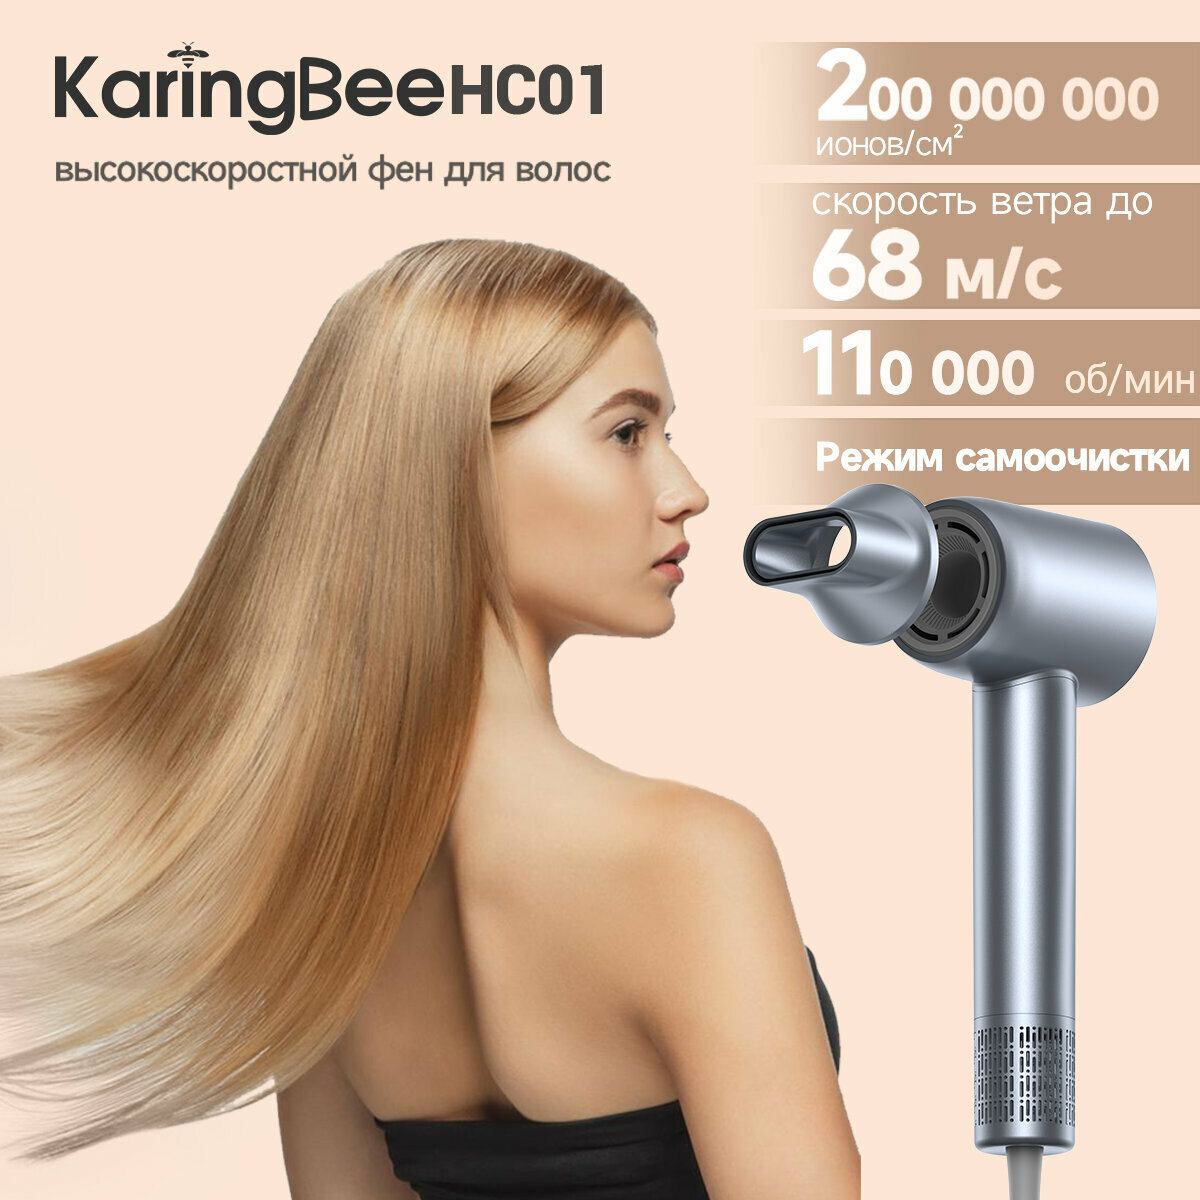 Высокоскоростной фен для волос KaringBee HC01, 200 миллионов отрицательных ионов, 4 температур, 3 скорости, серебристый